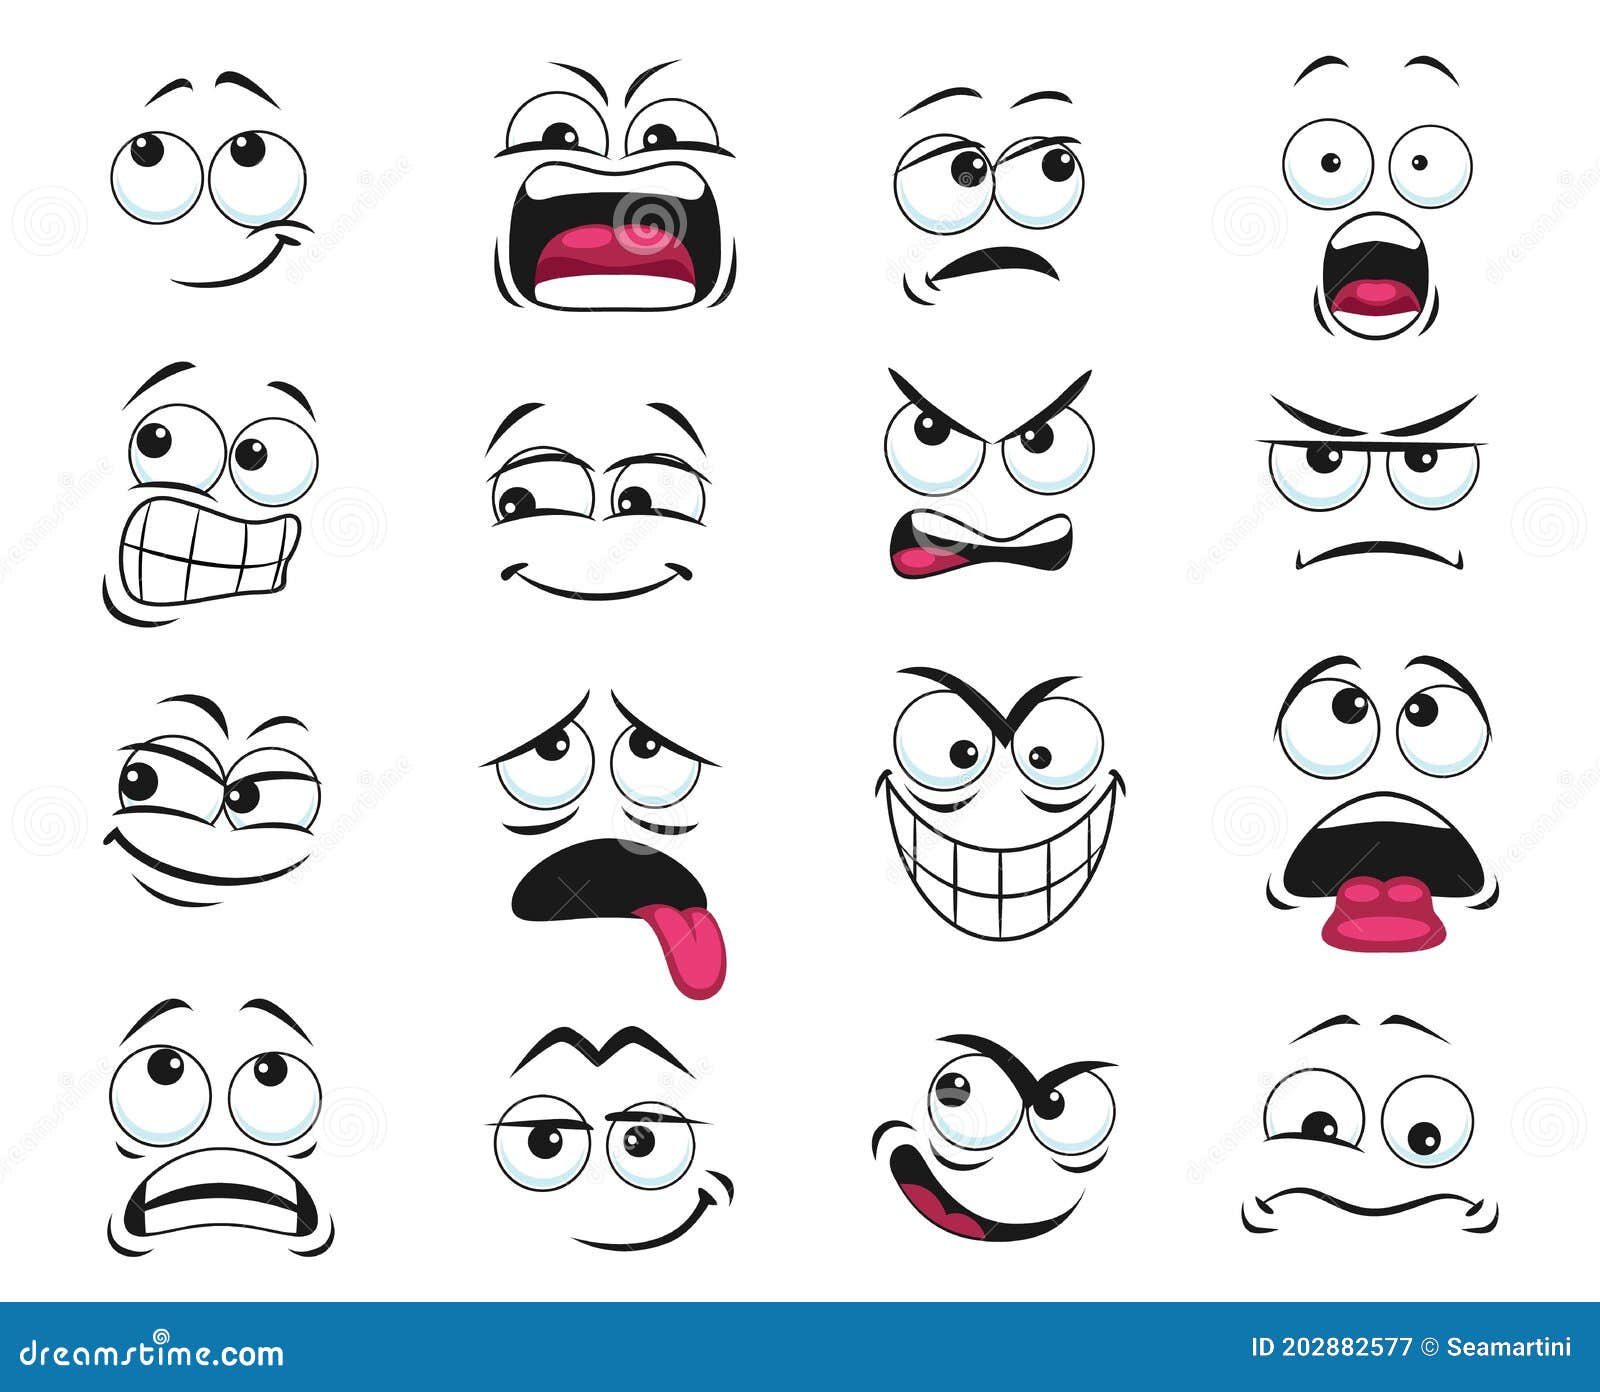 Facial Expressions Cartoon